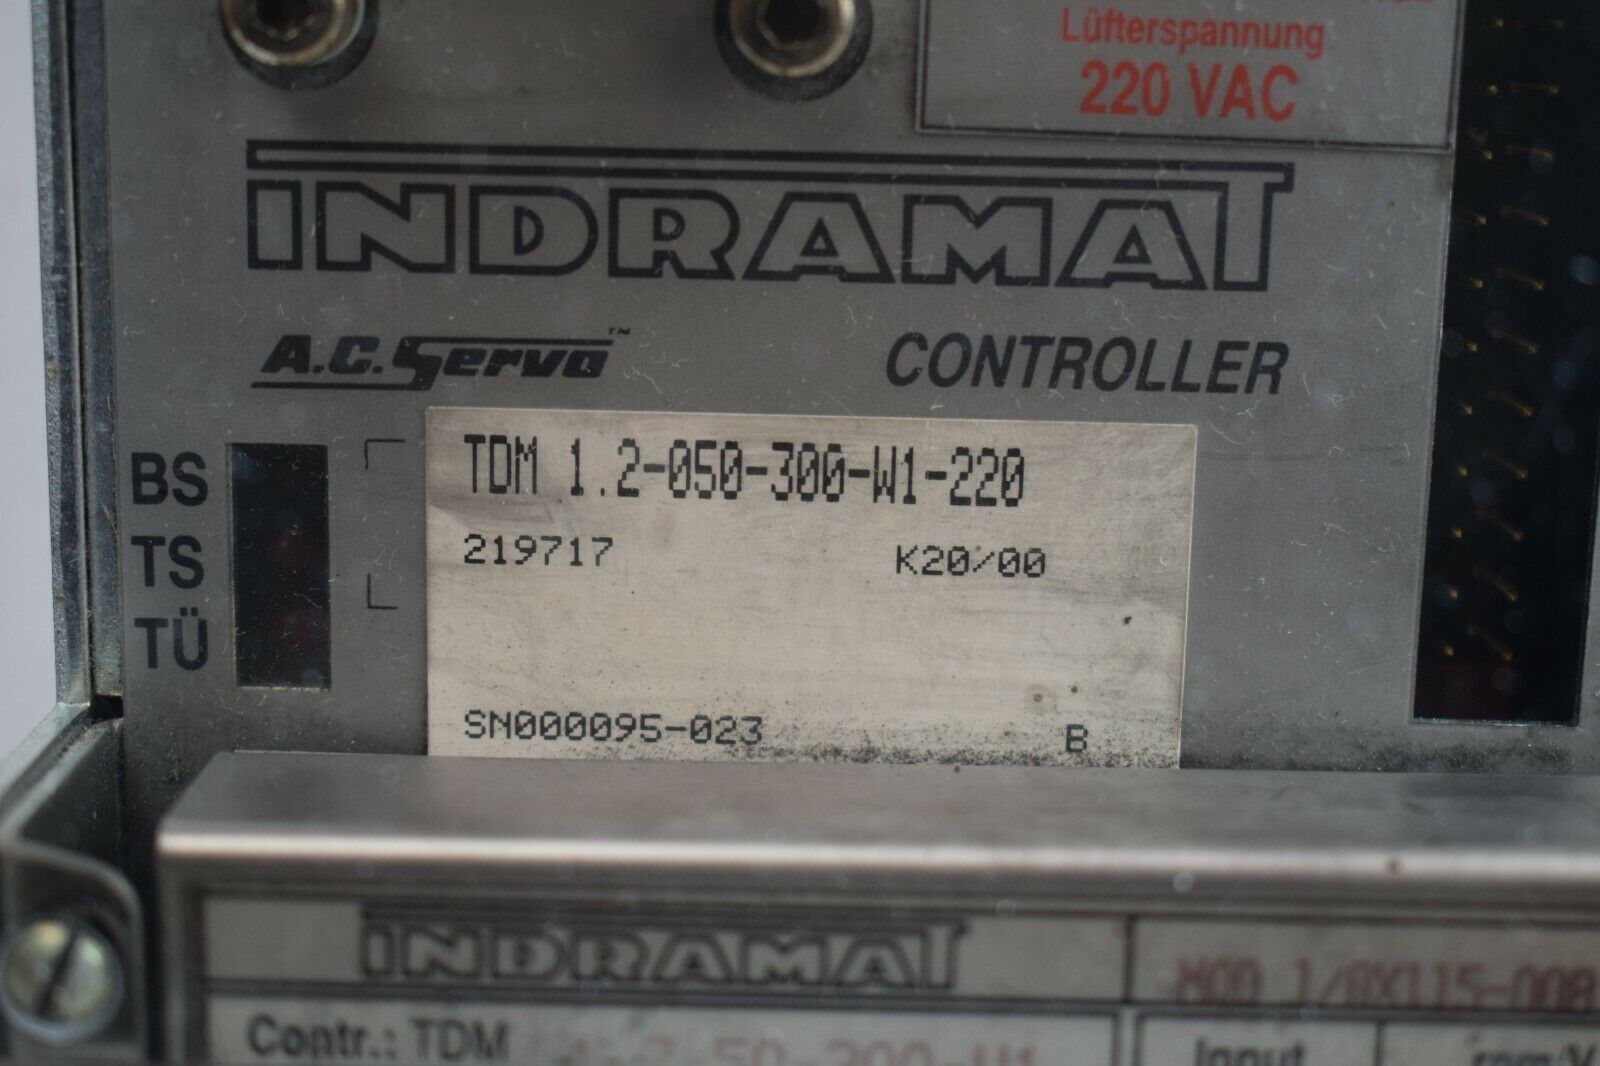 Indramat A.C. Servo Controller TDM 1.2-050-300-W1-220 + MOD1/0X115-008